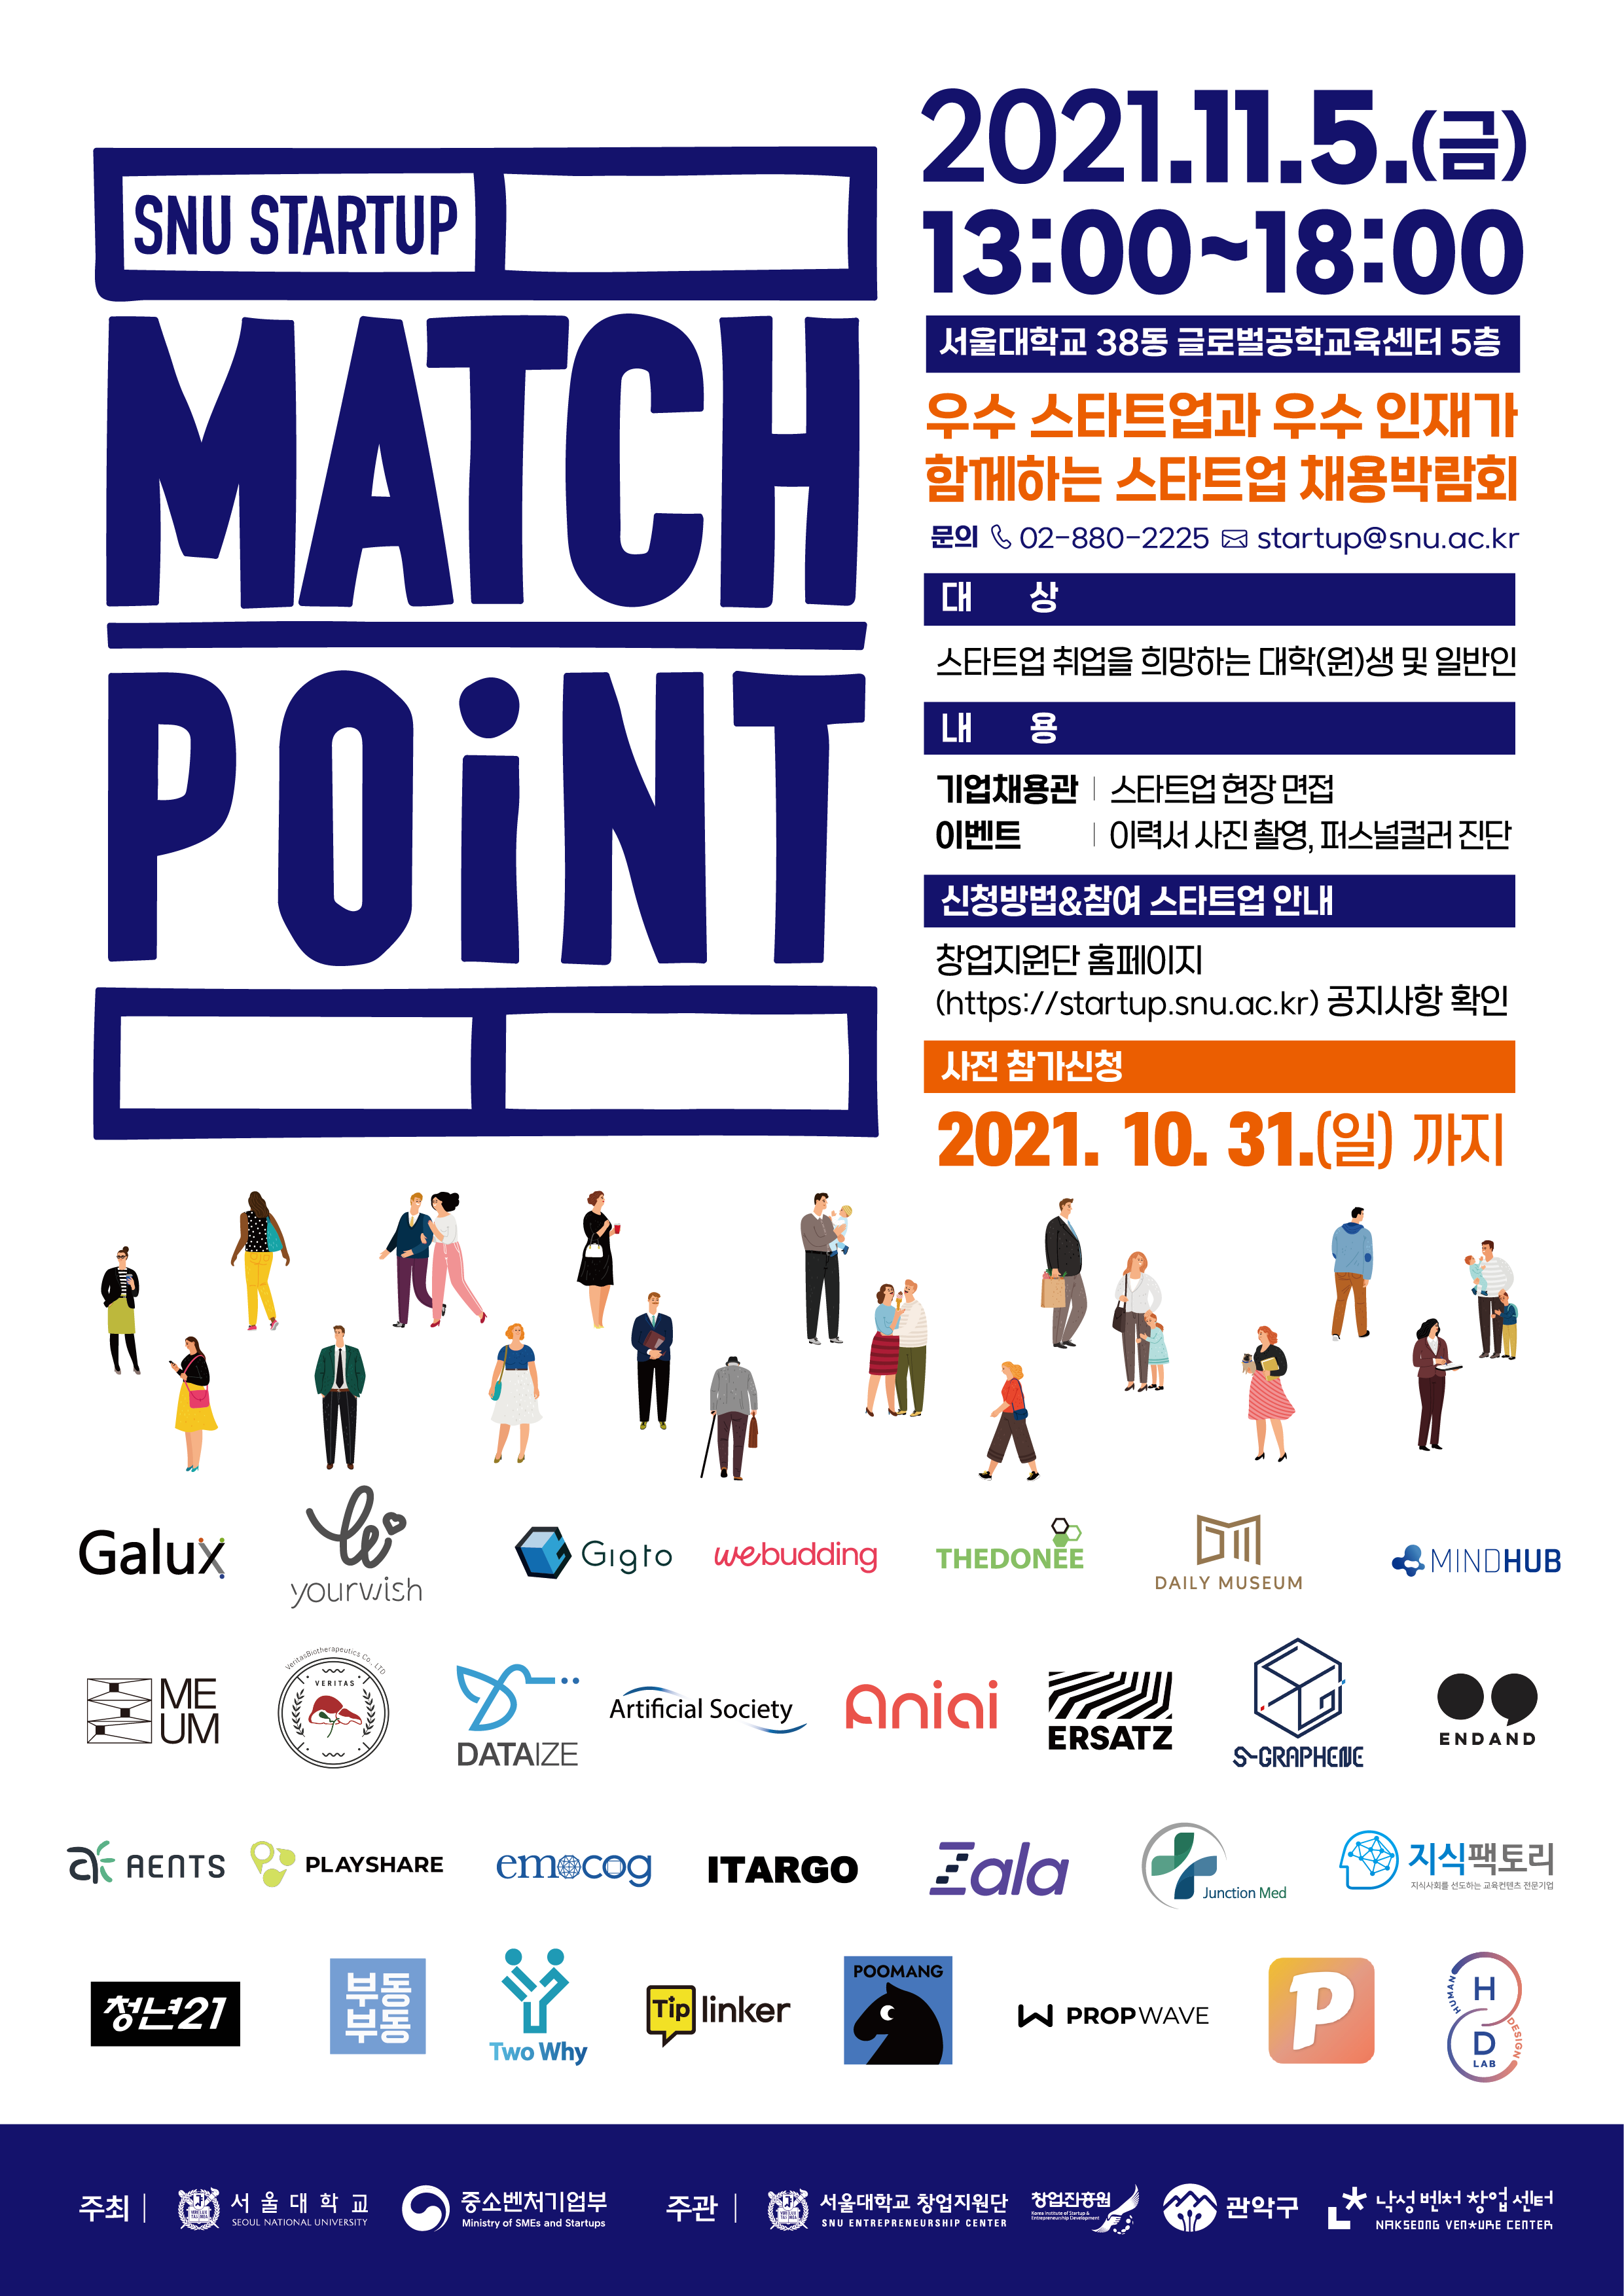 서울대학교 창업지원단에서는 2021년 초기창업패키지사업의 일환인 스타트업 인재채용박람회 [SNU STARTUP MATCH POINT(매치포인트)] 참가자를 모집하고 있습니다. 우수 스타트업에 취업을 희망하거나 관심 있는 학생분들의 많은 참여 바랍니다.